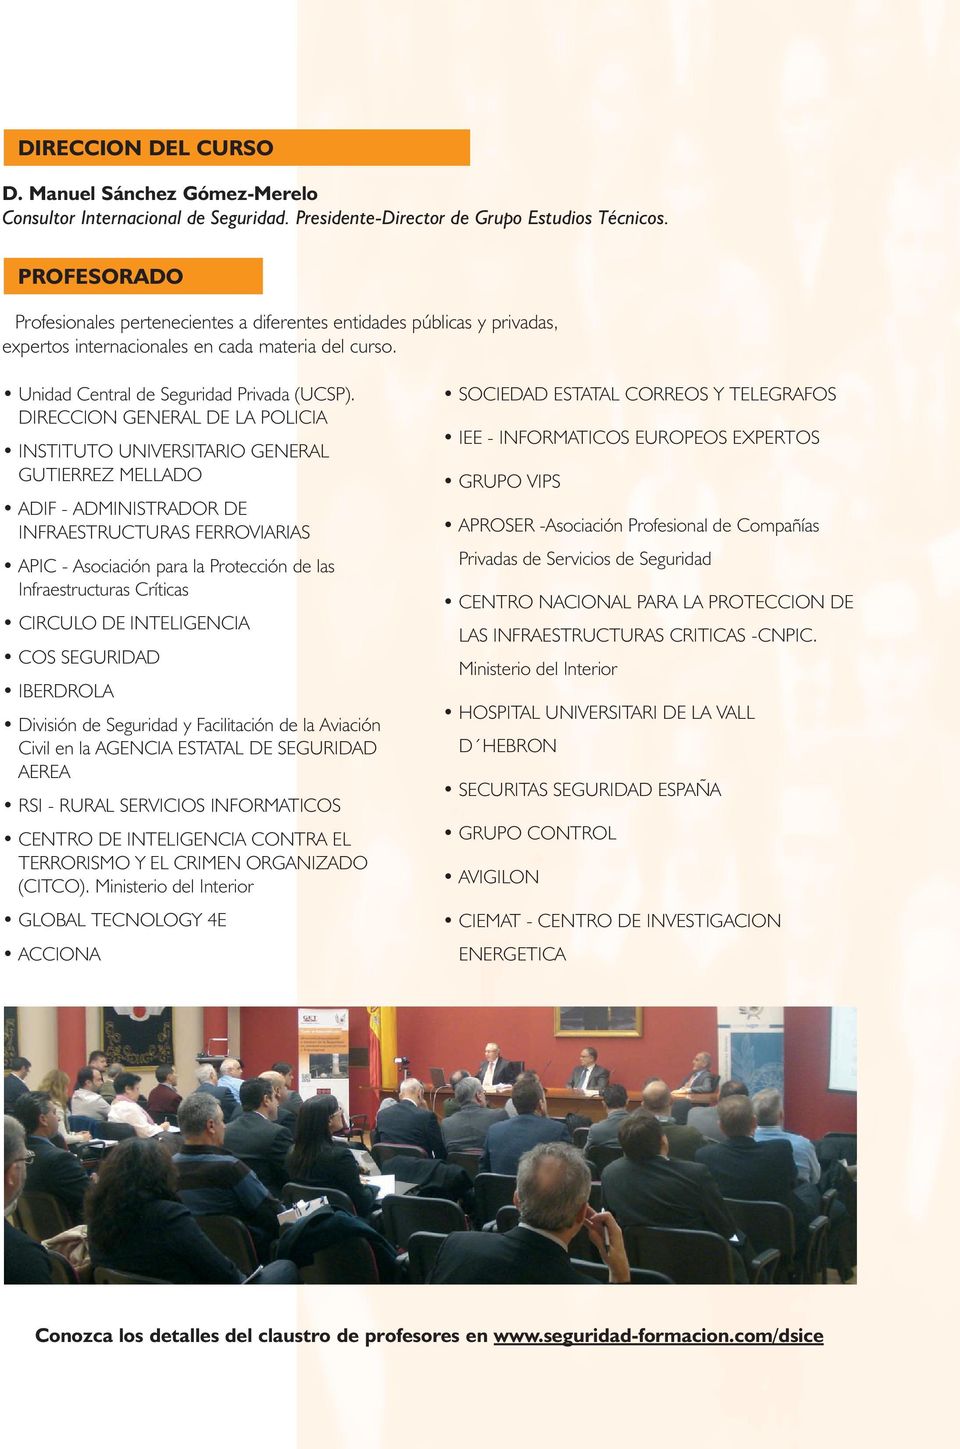 DIRECCION GENERAL DE LA POLICIA INSTITUTO UNIVERSITARIO GENERAL GUTIERREZ MELLADO ADIF - ADMINISTRADOR DE INFRAESTRUCTURAS FERROVIARIAS APIC - Asociación para la Protección de las Infraestructuras